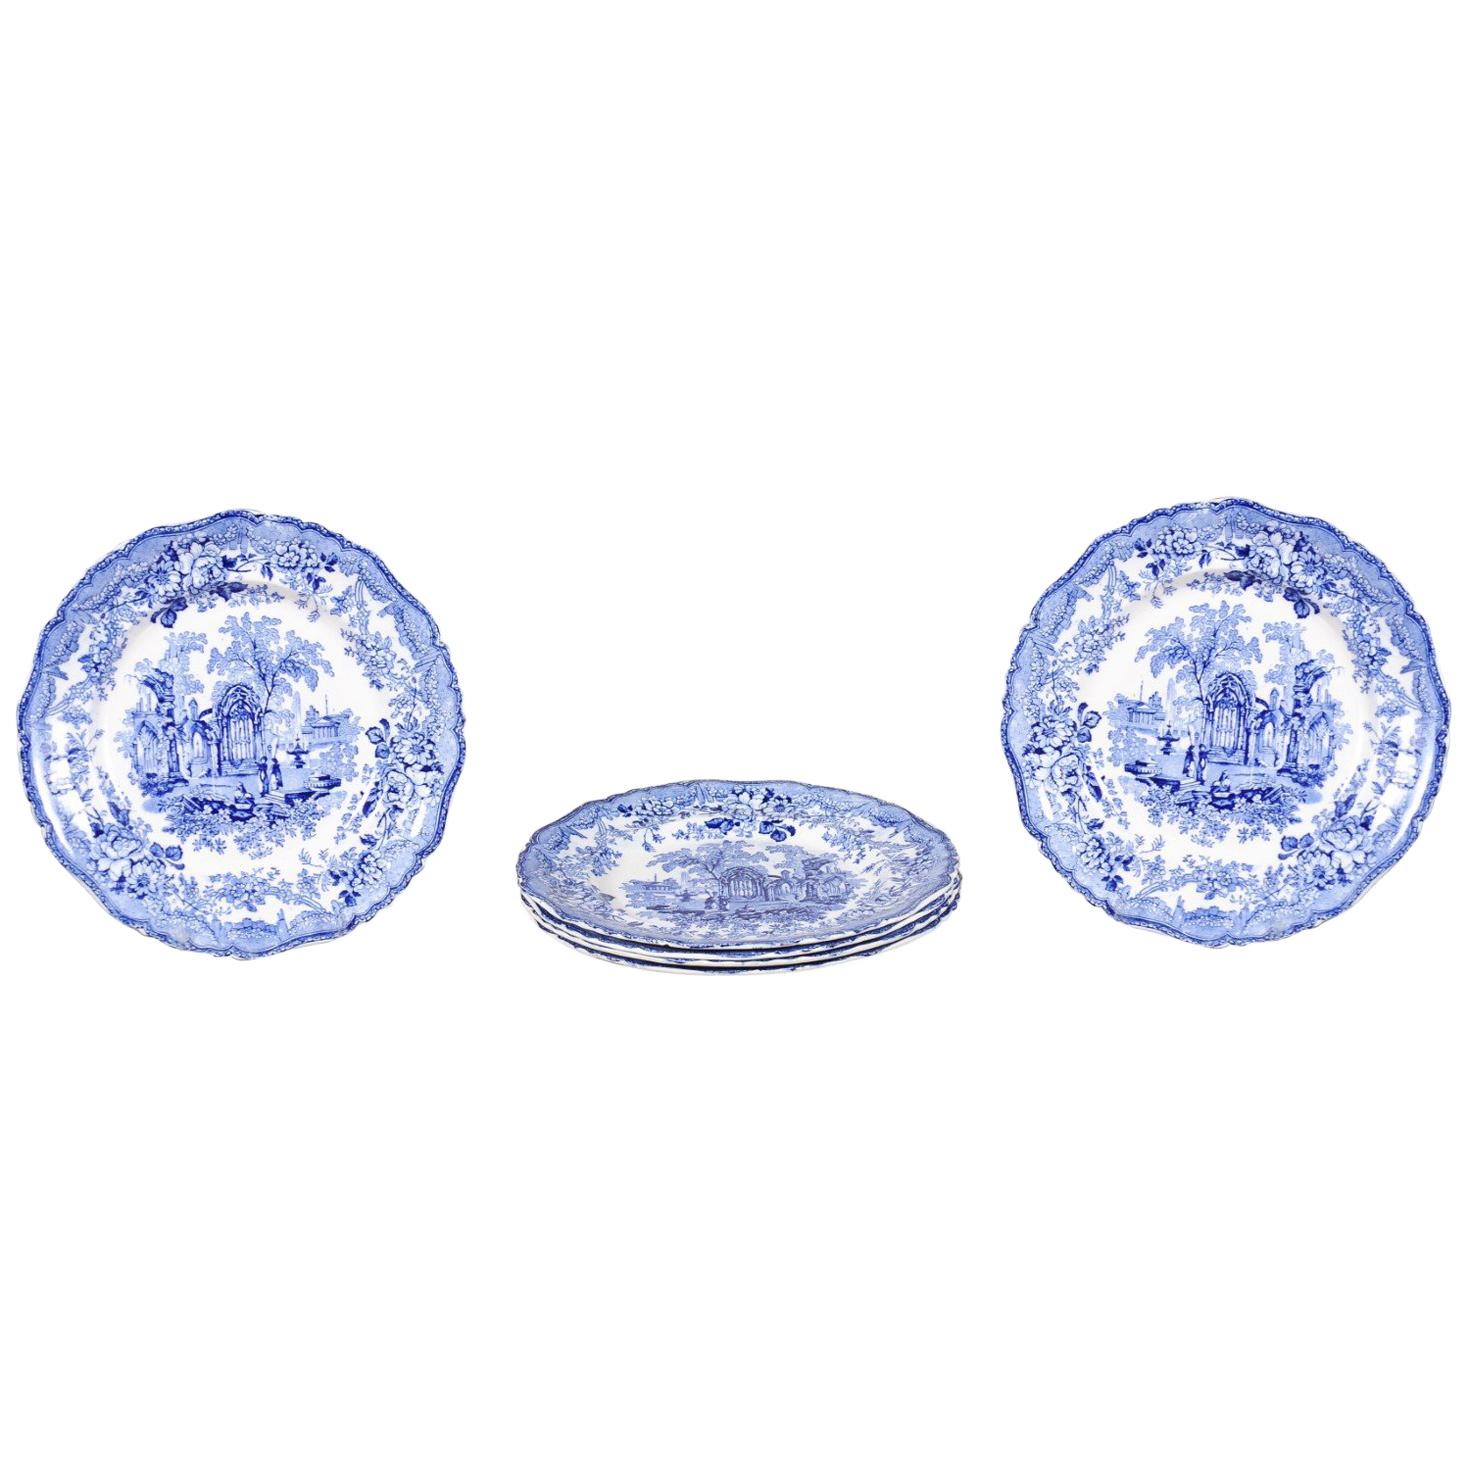 Assiettes de transfert anglaises bleues et blanches avec motifs de ruines gothiques, 19ème siècle